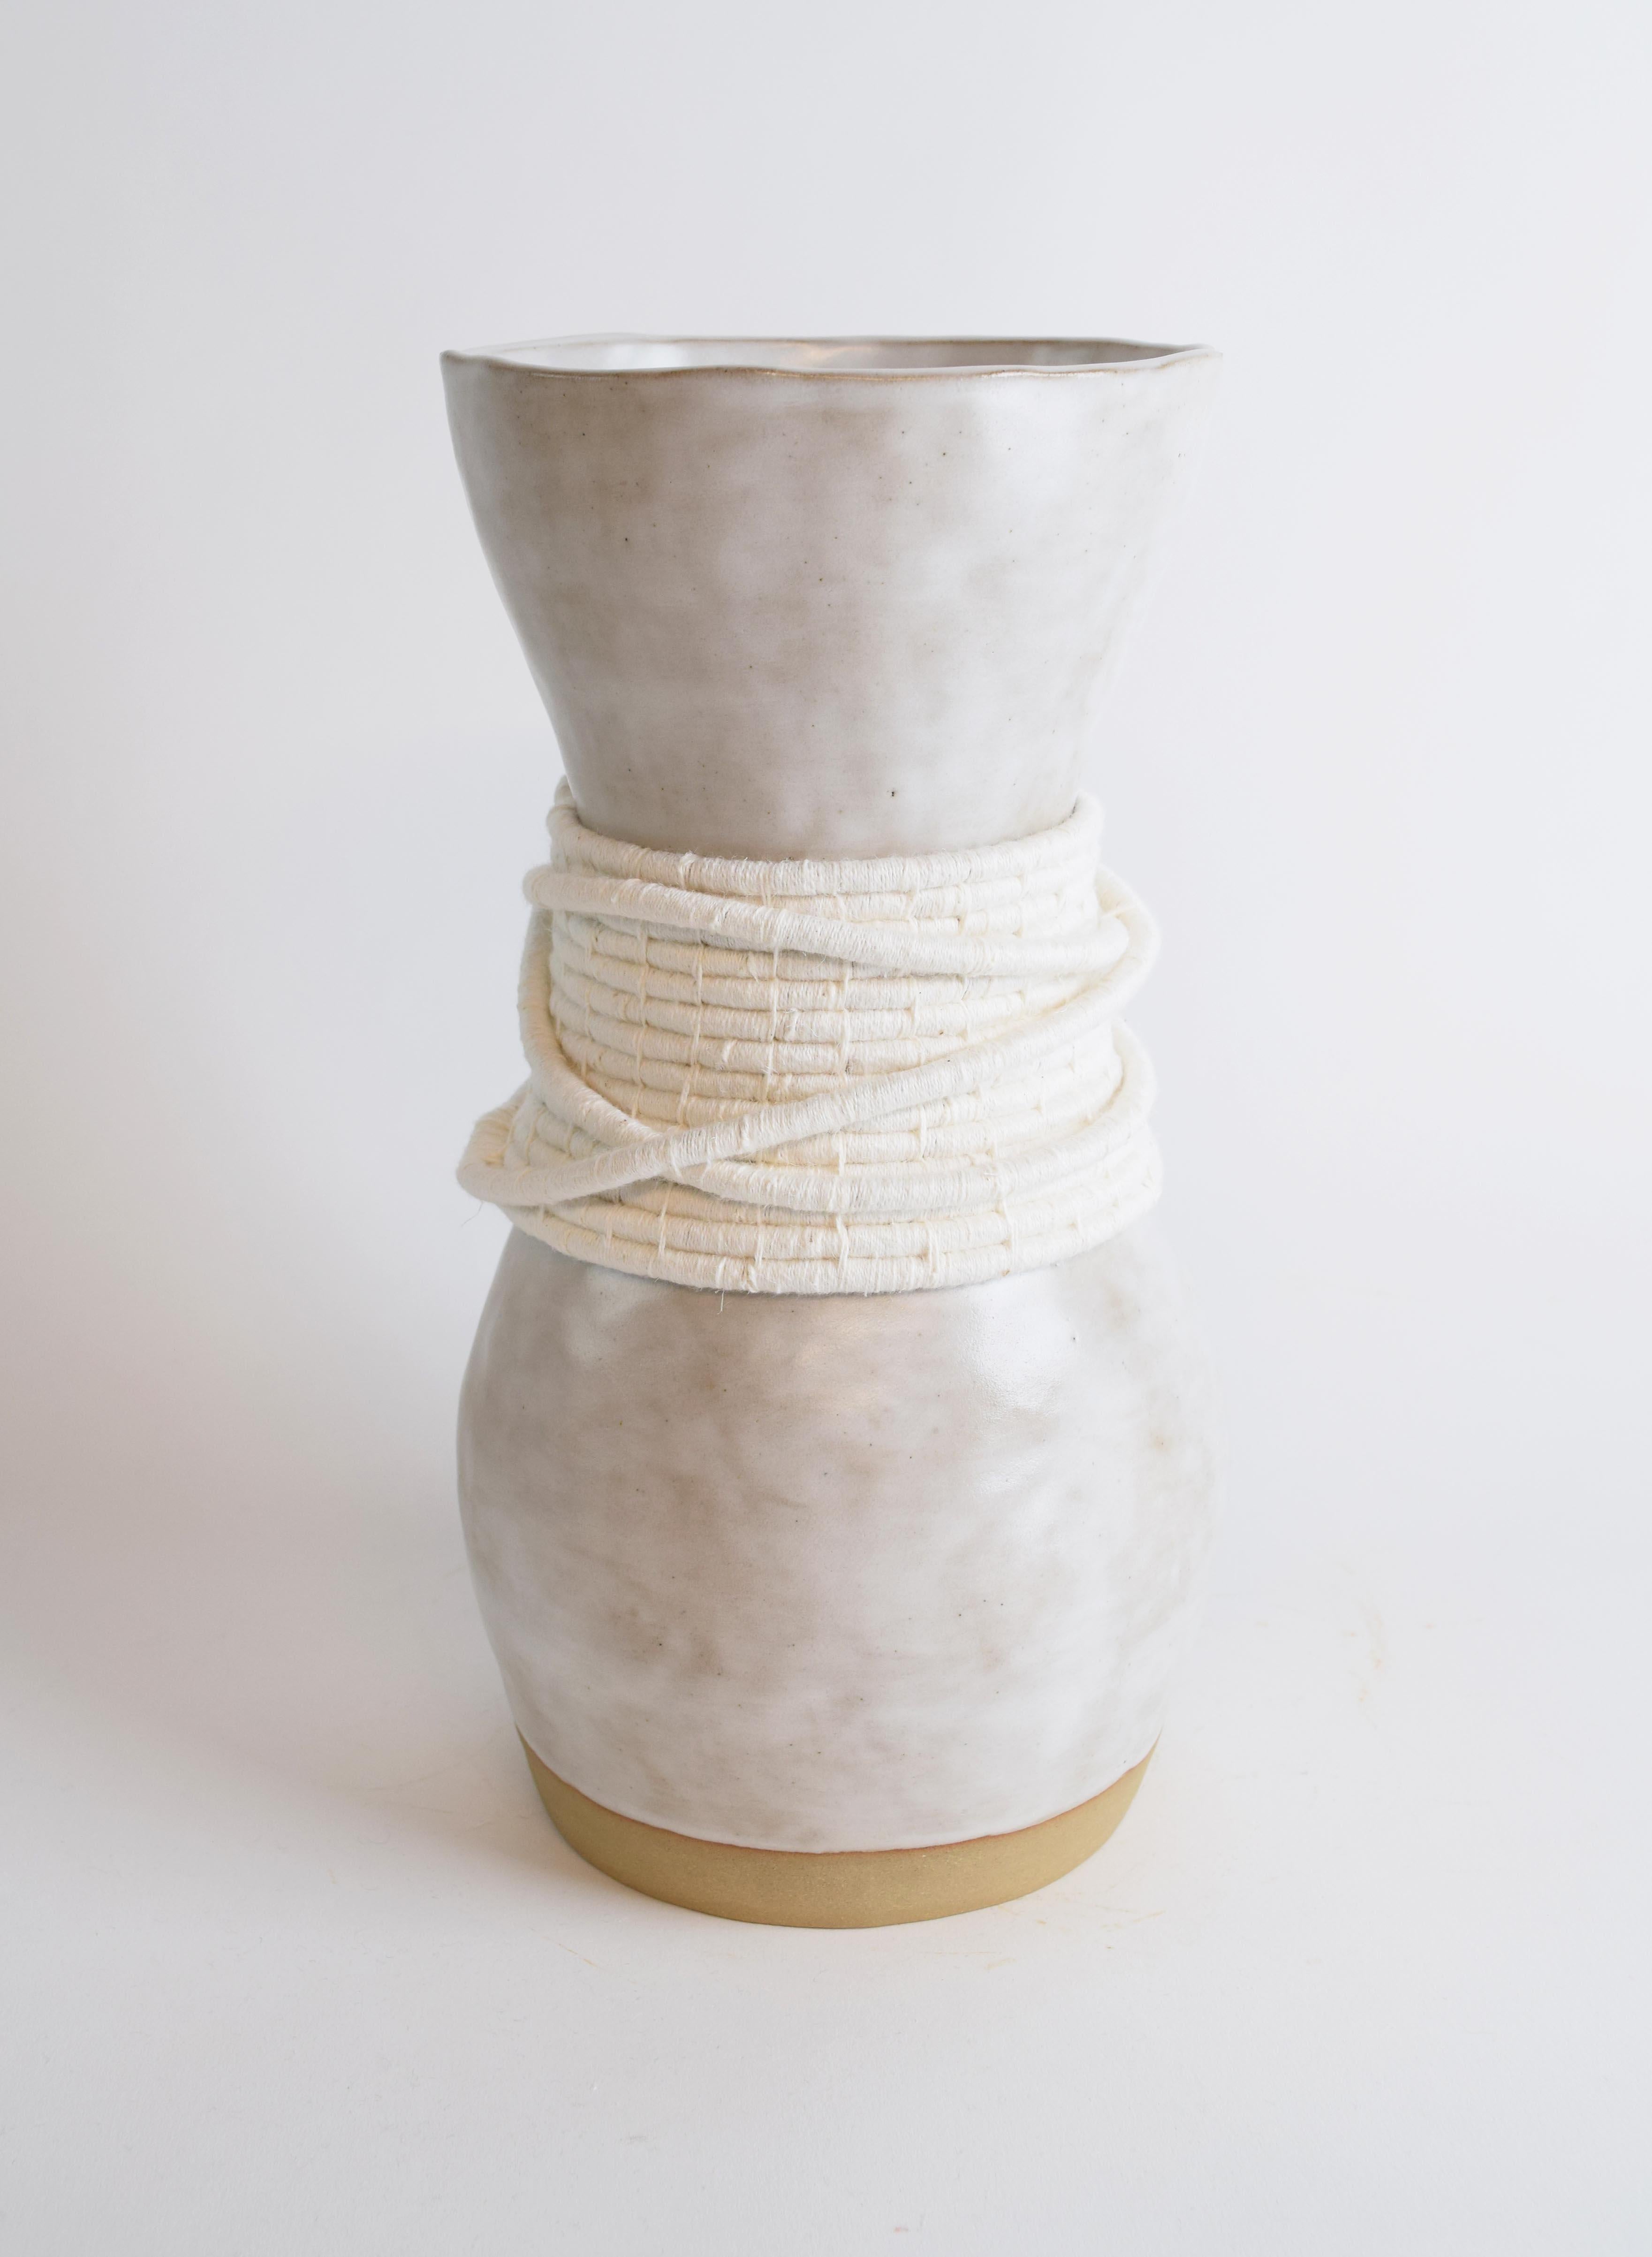 Américain Vase unique en son genre en céramique et fibres n° 809  - glaçure blanche avec coton blanc tissé en vente